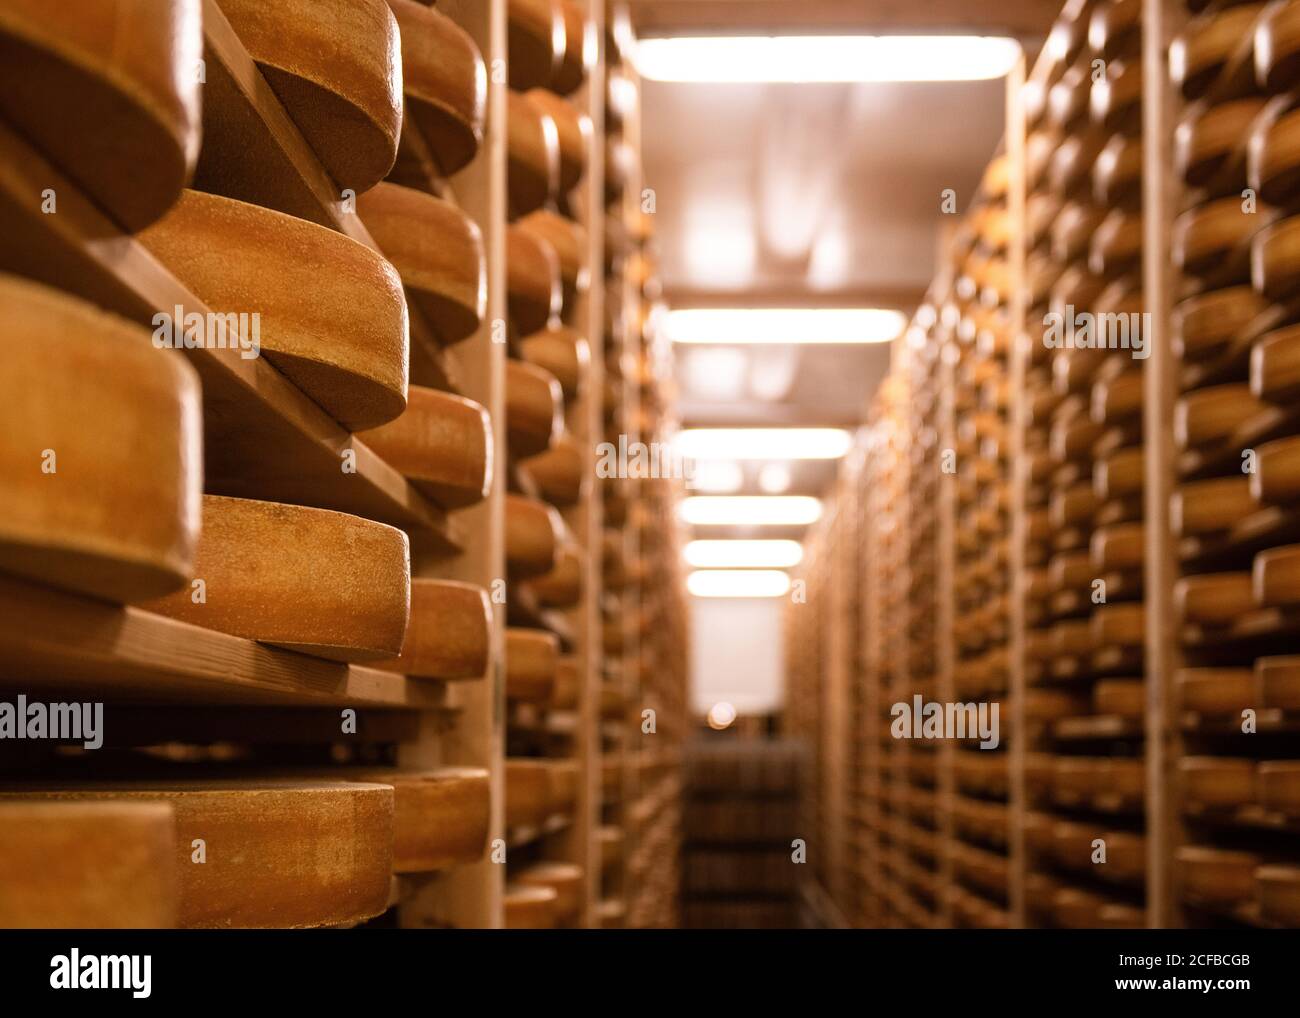 Fromage Gruyere sur les étagères de l'Etivaz, Suisse Banque D'Images